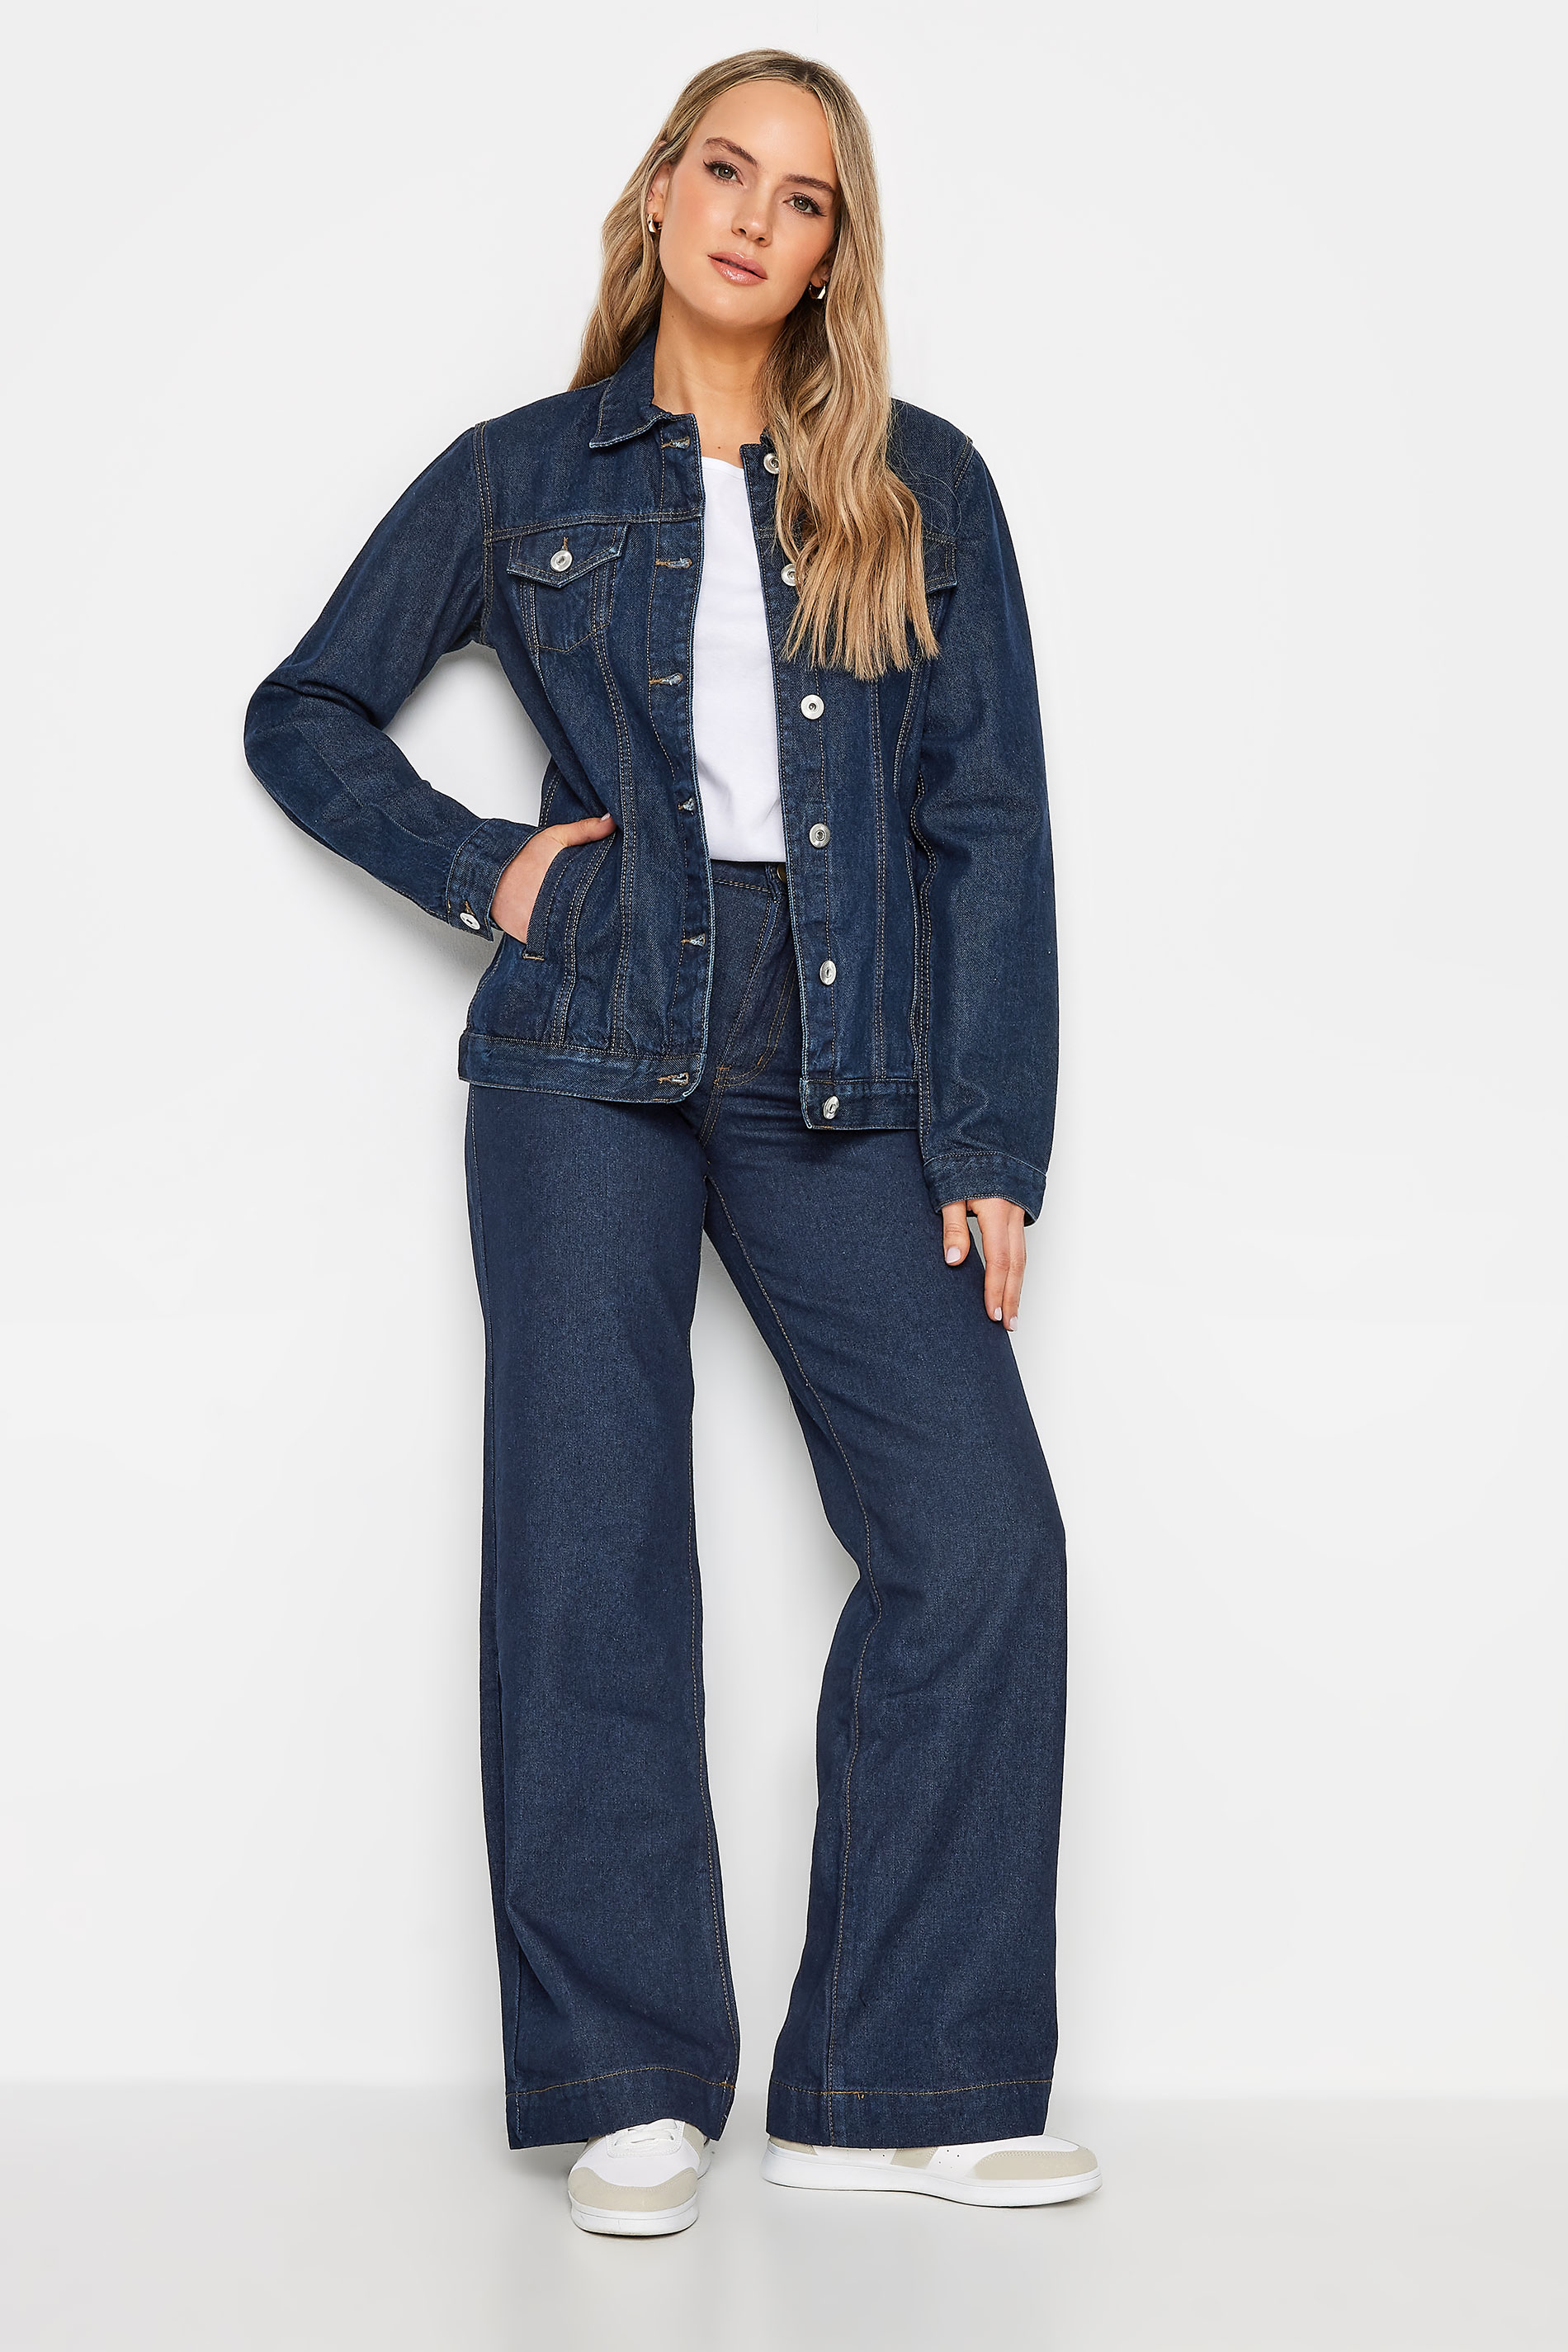 LTS Tall Women's Indigo Blue Denim Jacket | Long Tall Sally 3